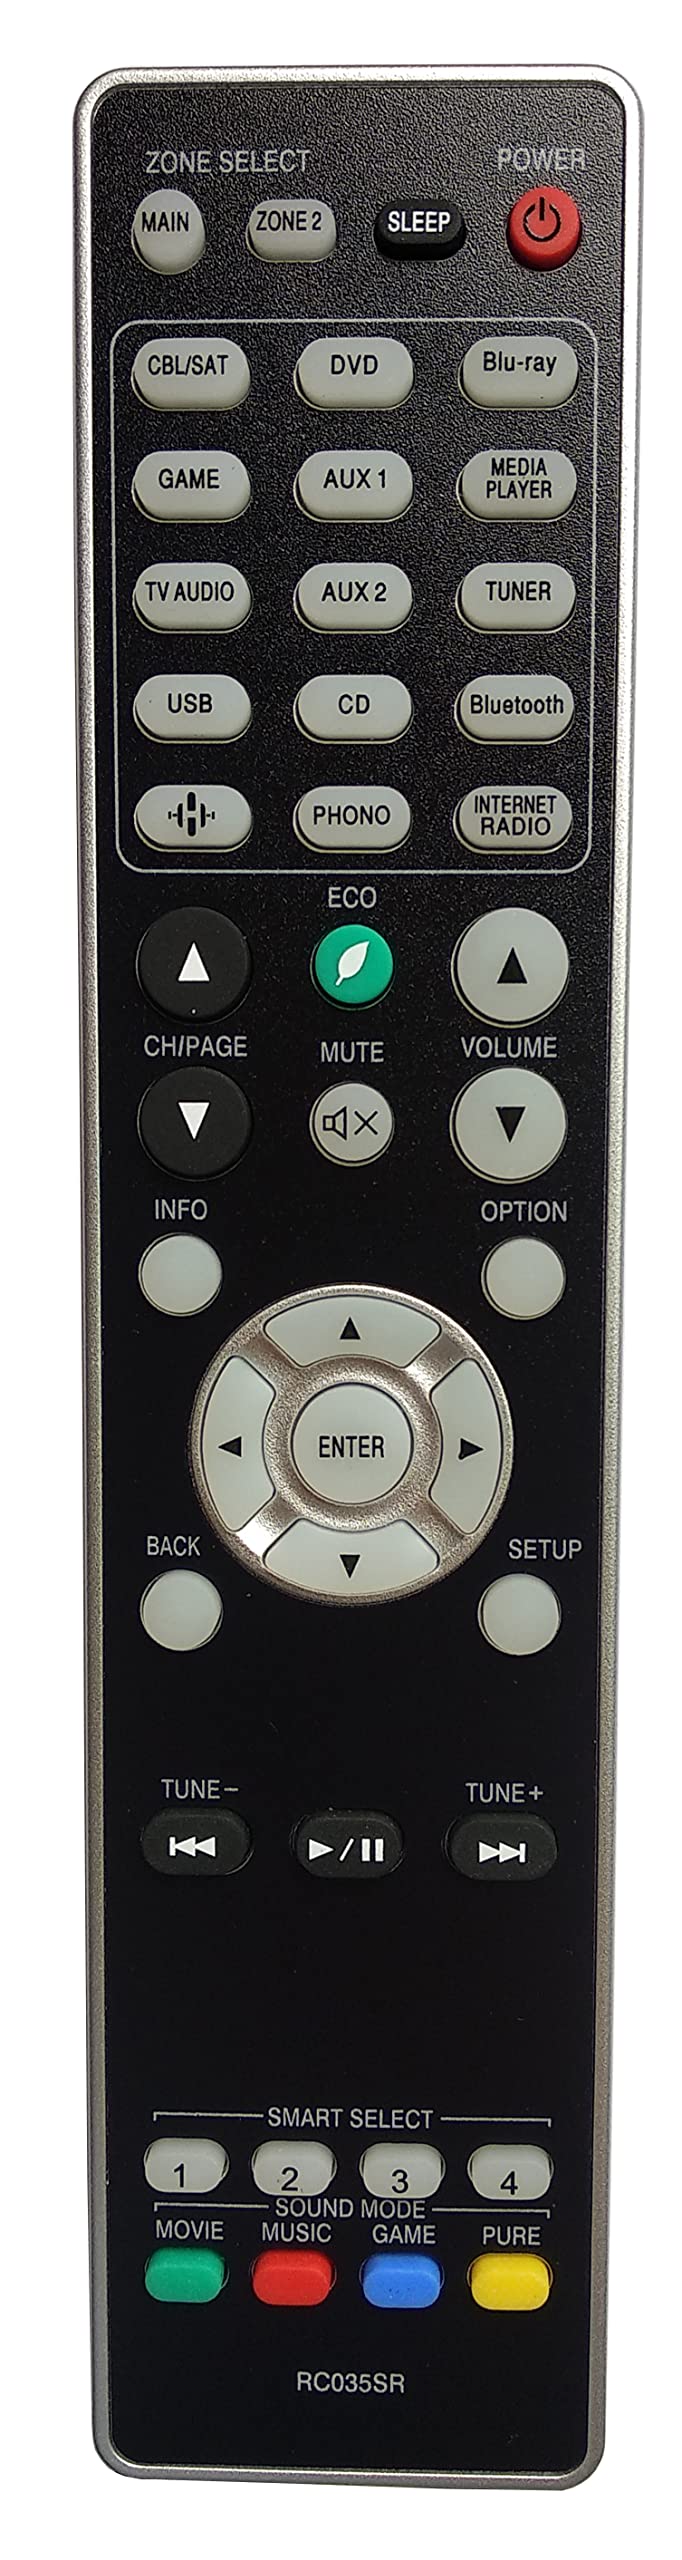  [AUSTRALIA] - Gorilla babo Universal Remote Compatible for MARANTZ RC035SR NR1609 NR1710 SR5013 SR5014 SR6012 SR6014 Audio/Video Receiver Remote Control